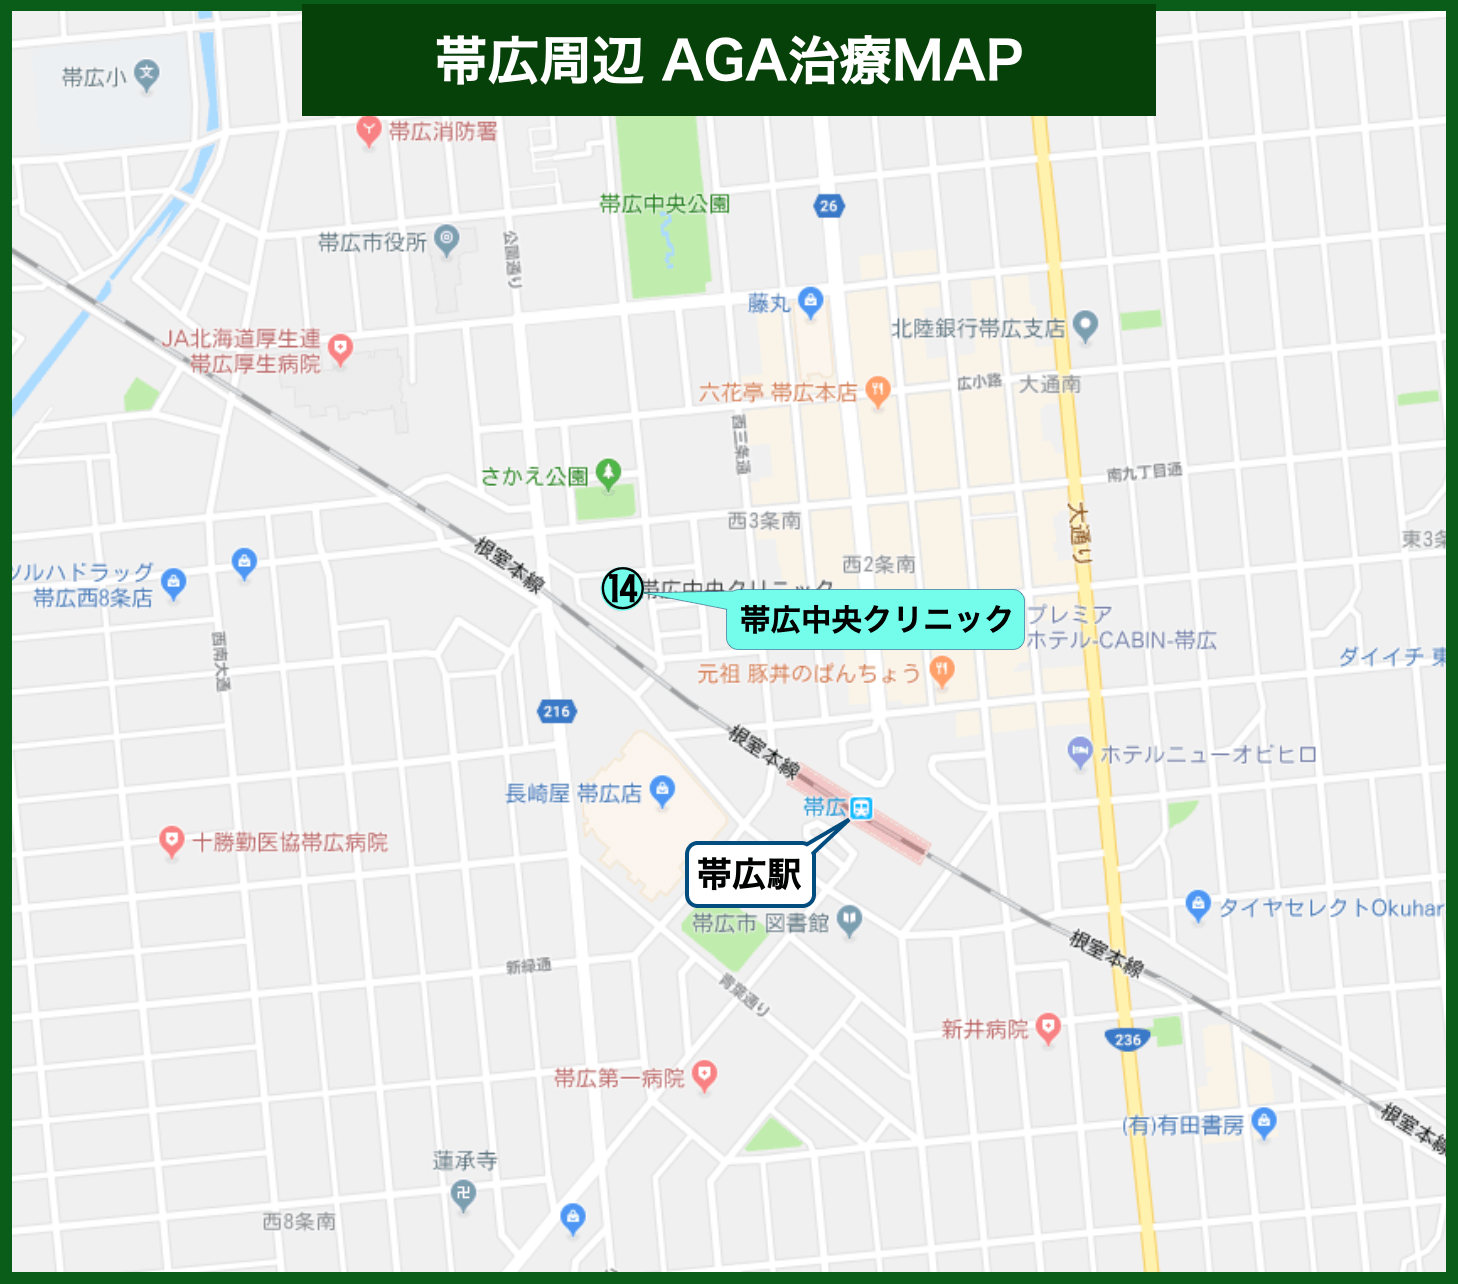 帯広周辺AGA治療MAP